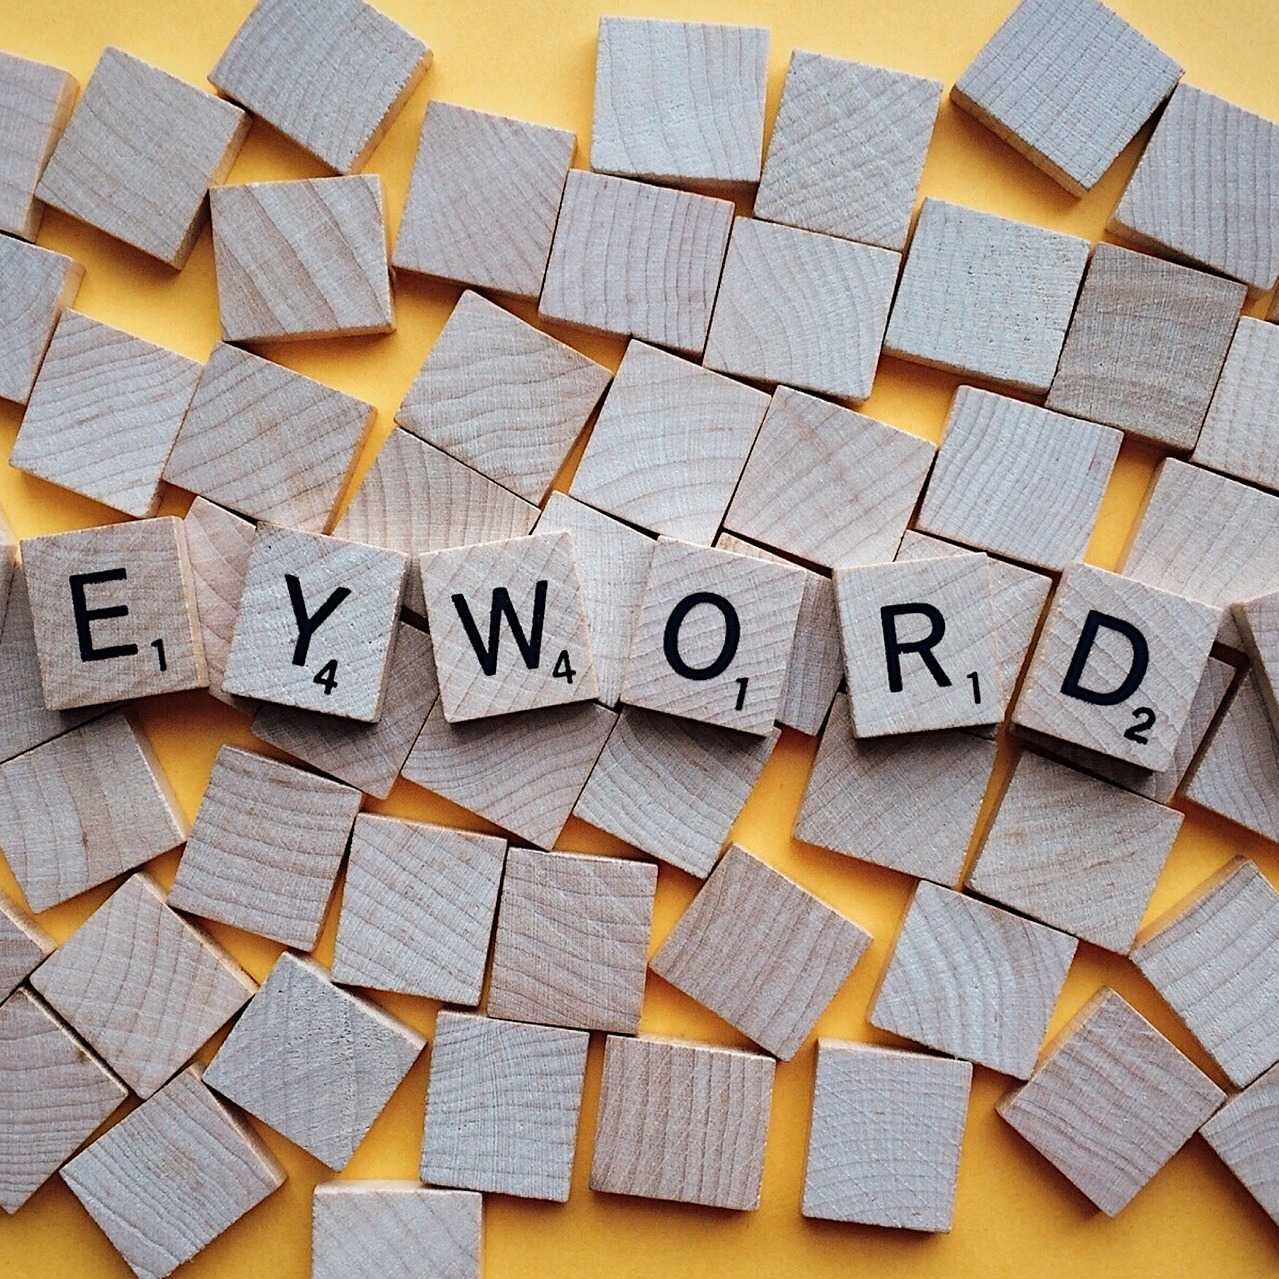 Con il termine inglese Keyword si intendono una o più parole che gli utenti scrivono nei motori di ricerca per trovare e consultare i siti Web di loro interesse